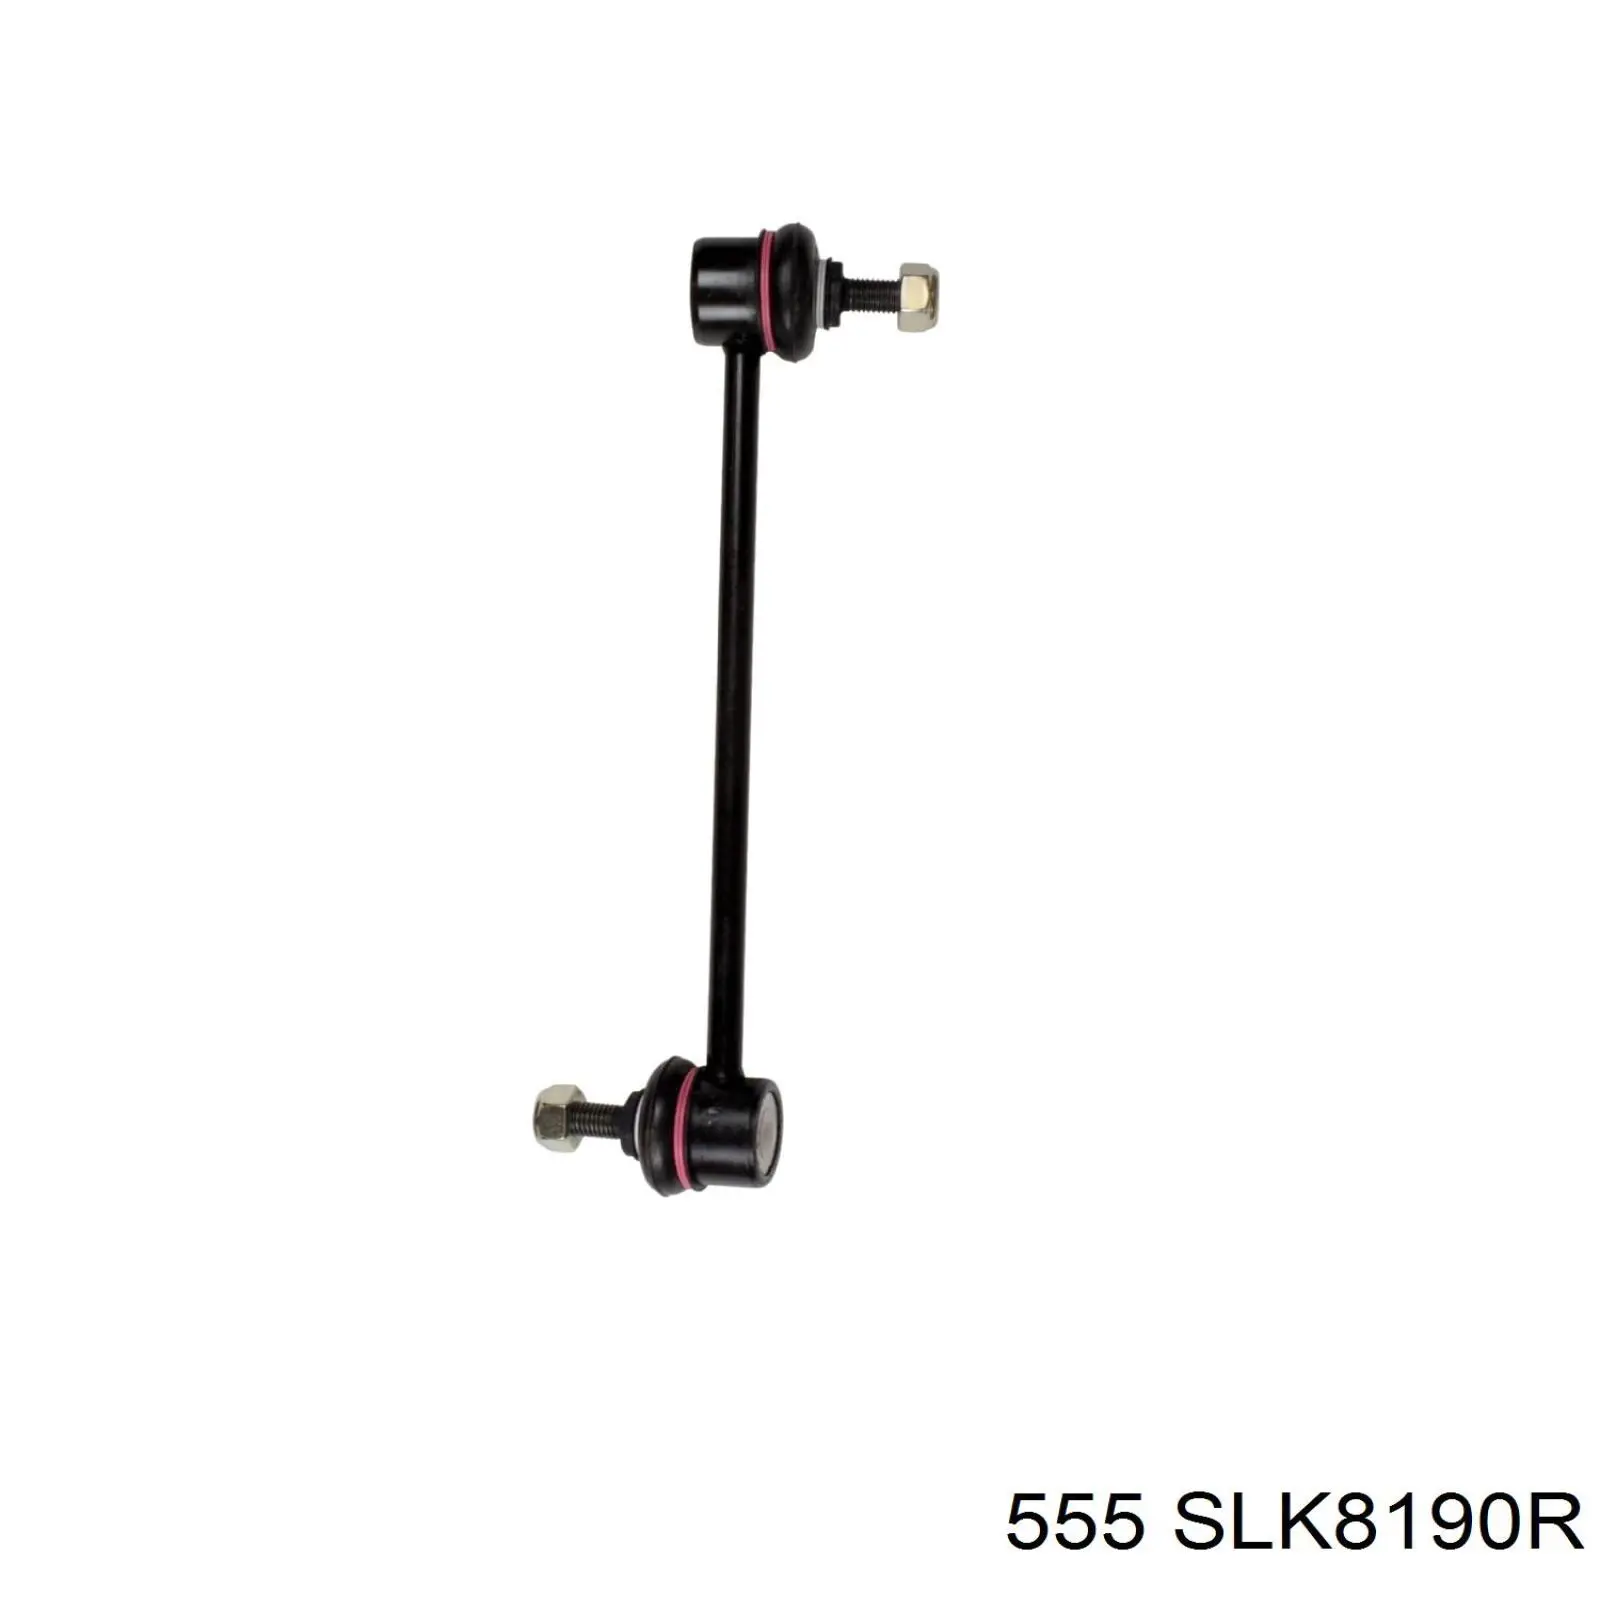 SLK-8190R 555 barra estabilizadora delantera derecha